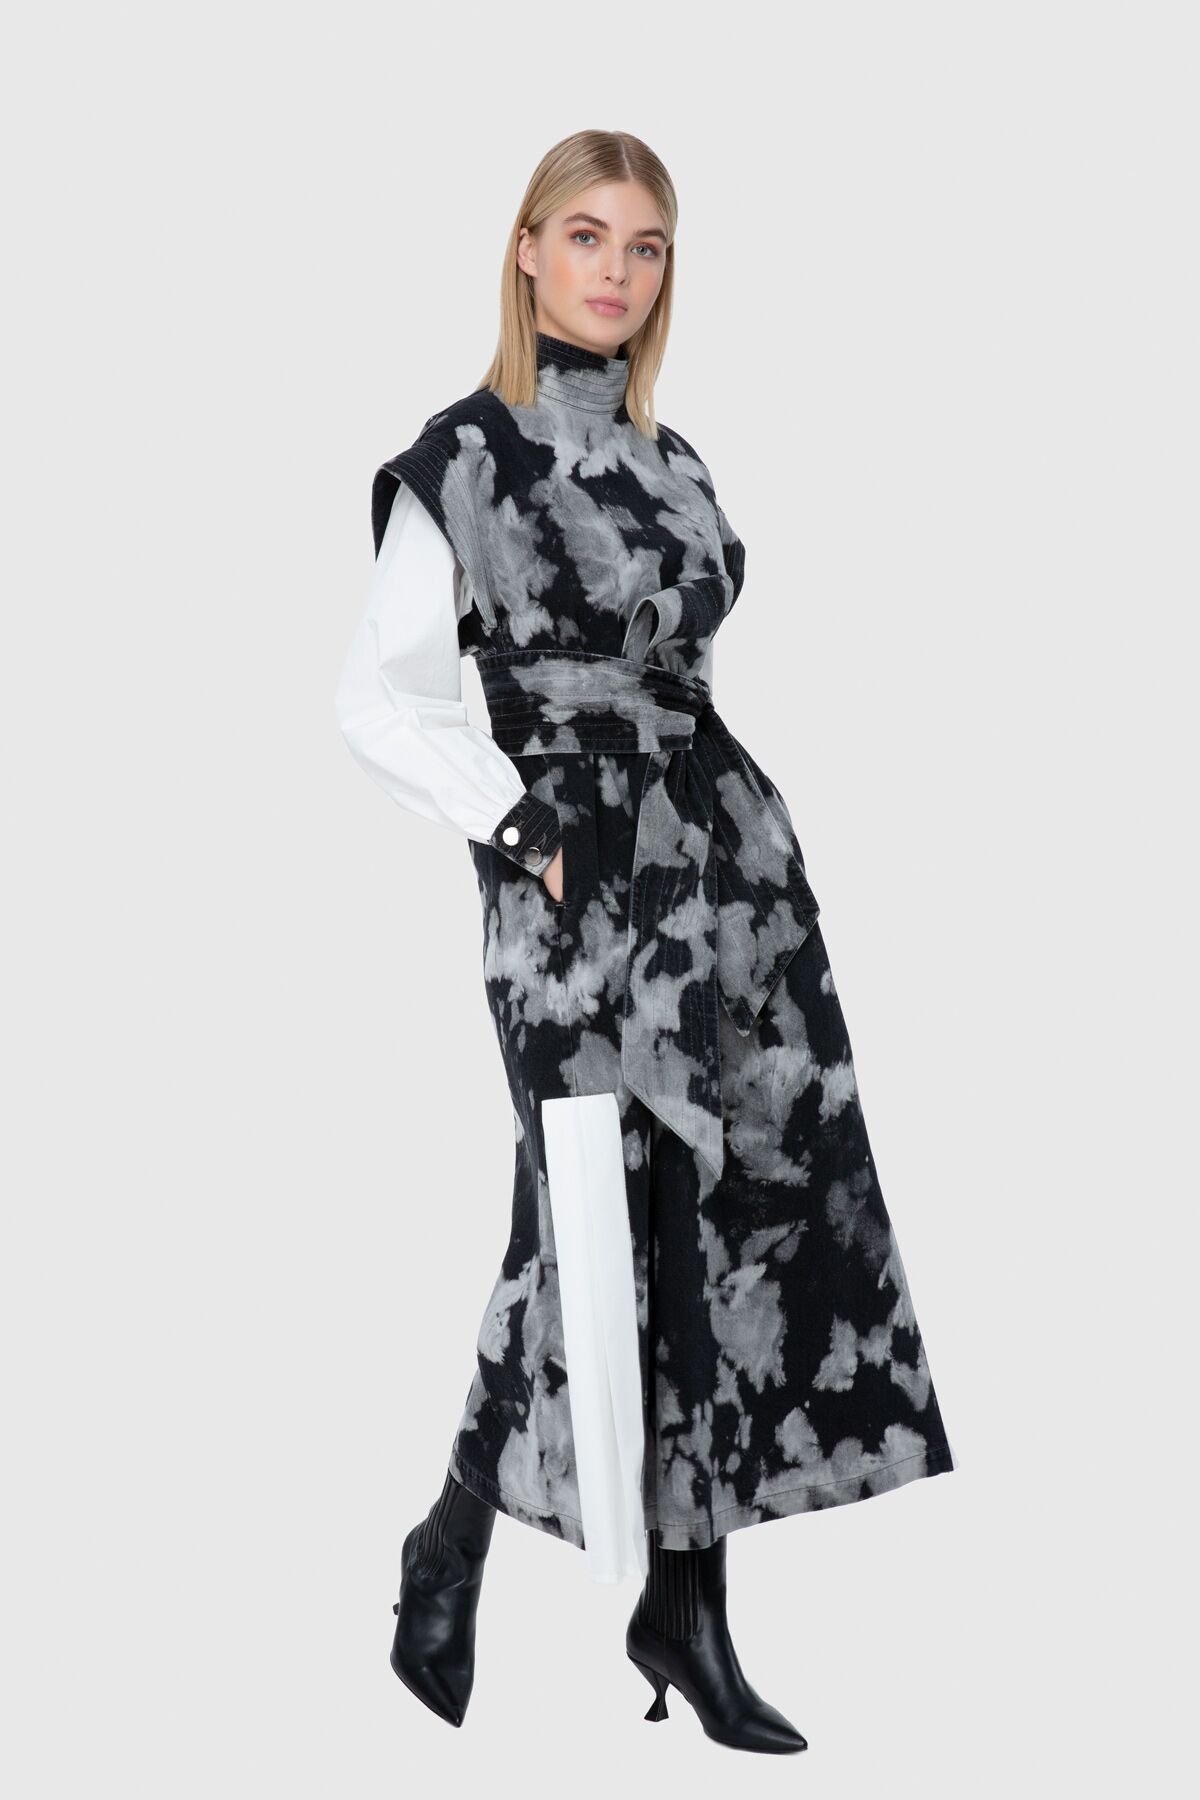 Jakron Detaylı Kontrast Batik Yıkamalı Jean Elbise